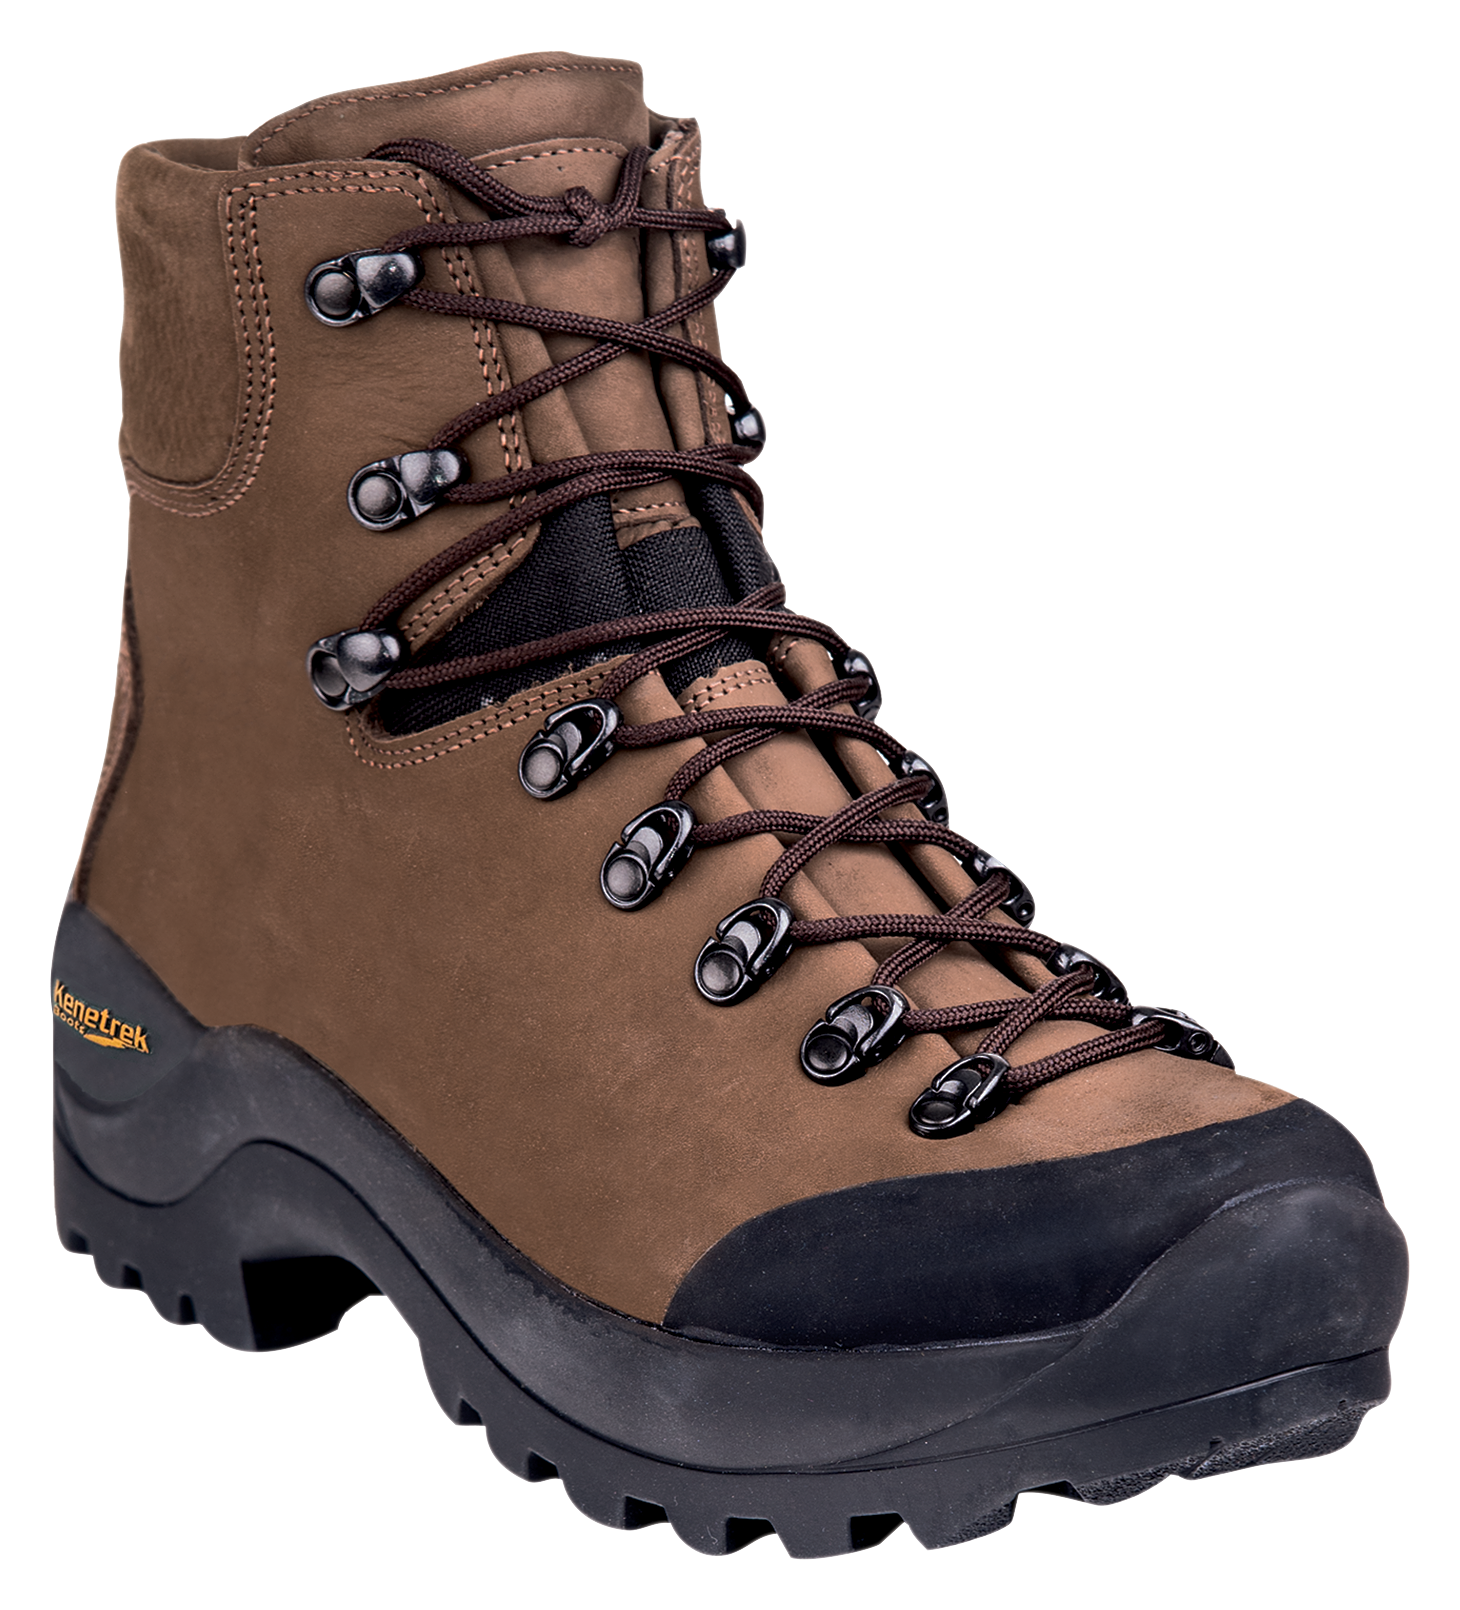 Kenetrek Desert Guide Hunting Boots for Men - Brown - 9.5W